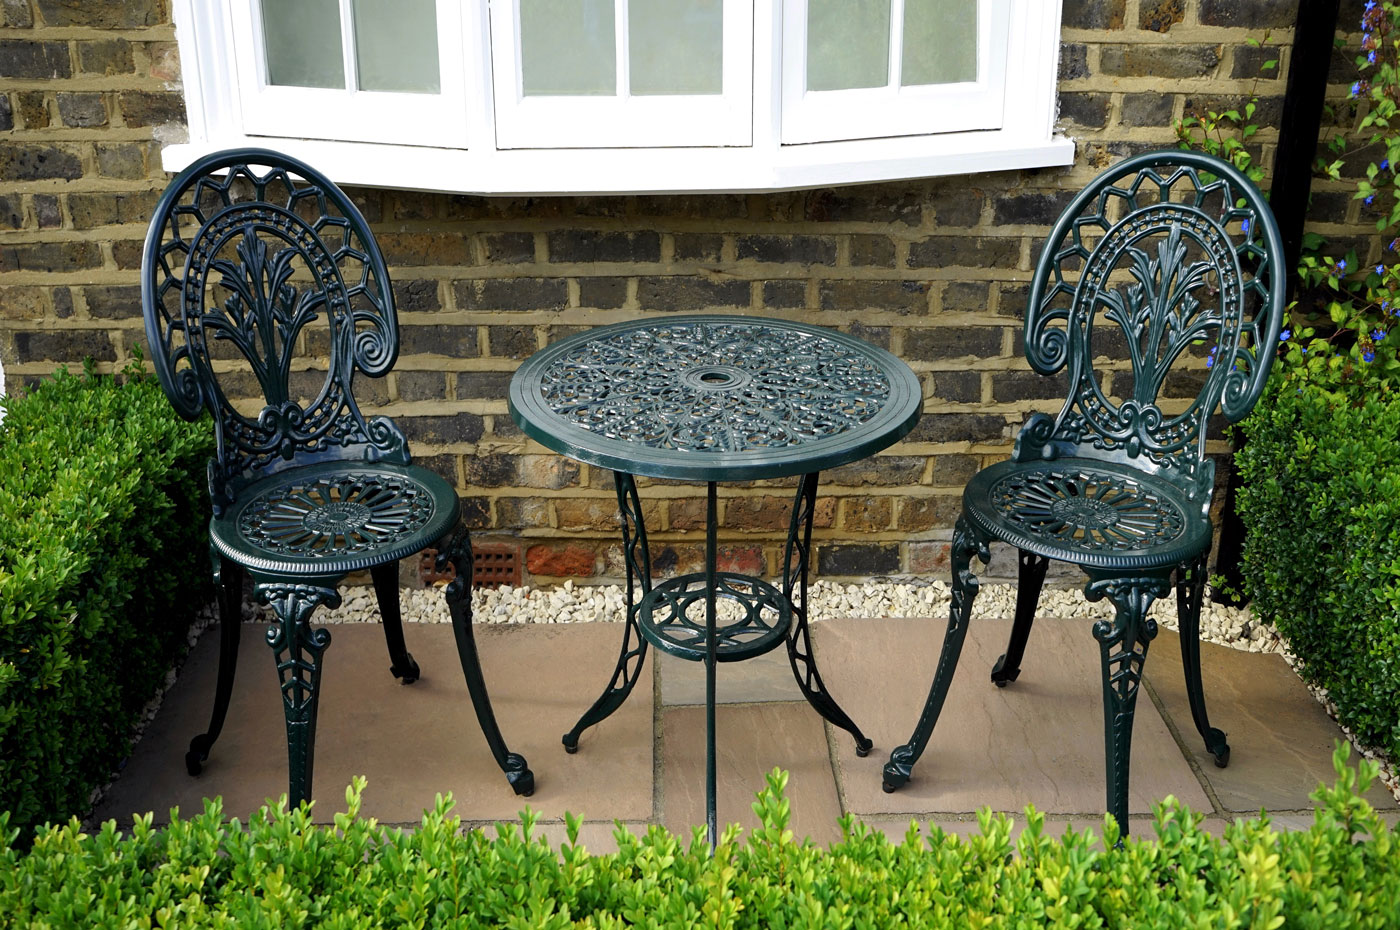 Margaret Mitchell Seguro beneficioso Cómo restaurar muebles de jardín fácilmente | Servei Estació